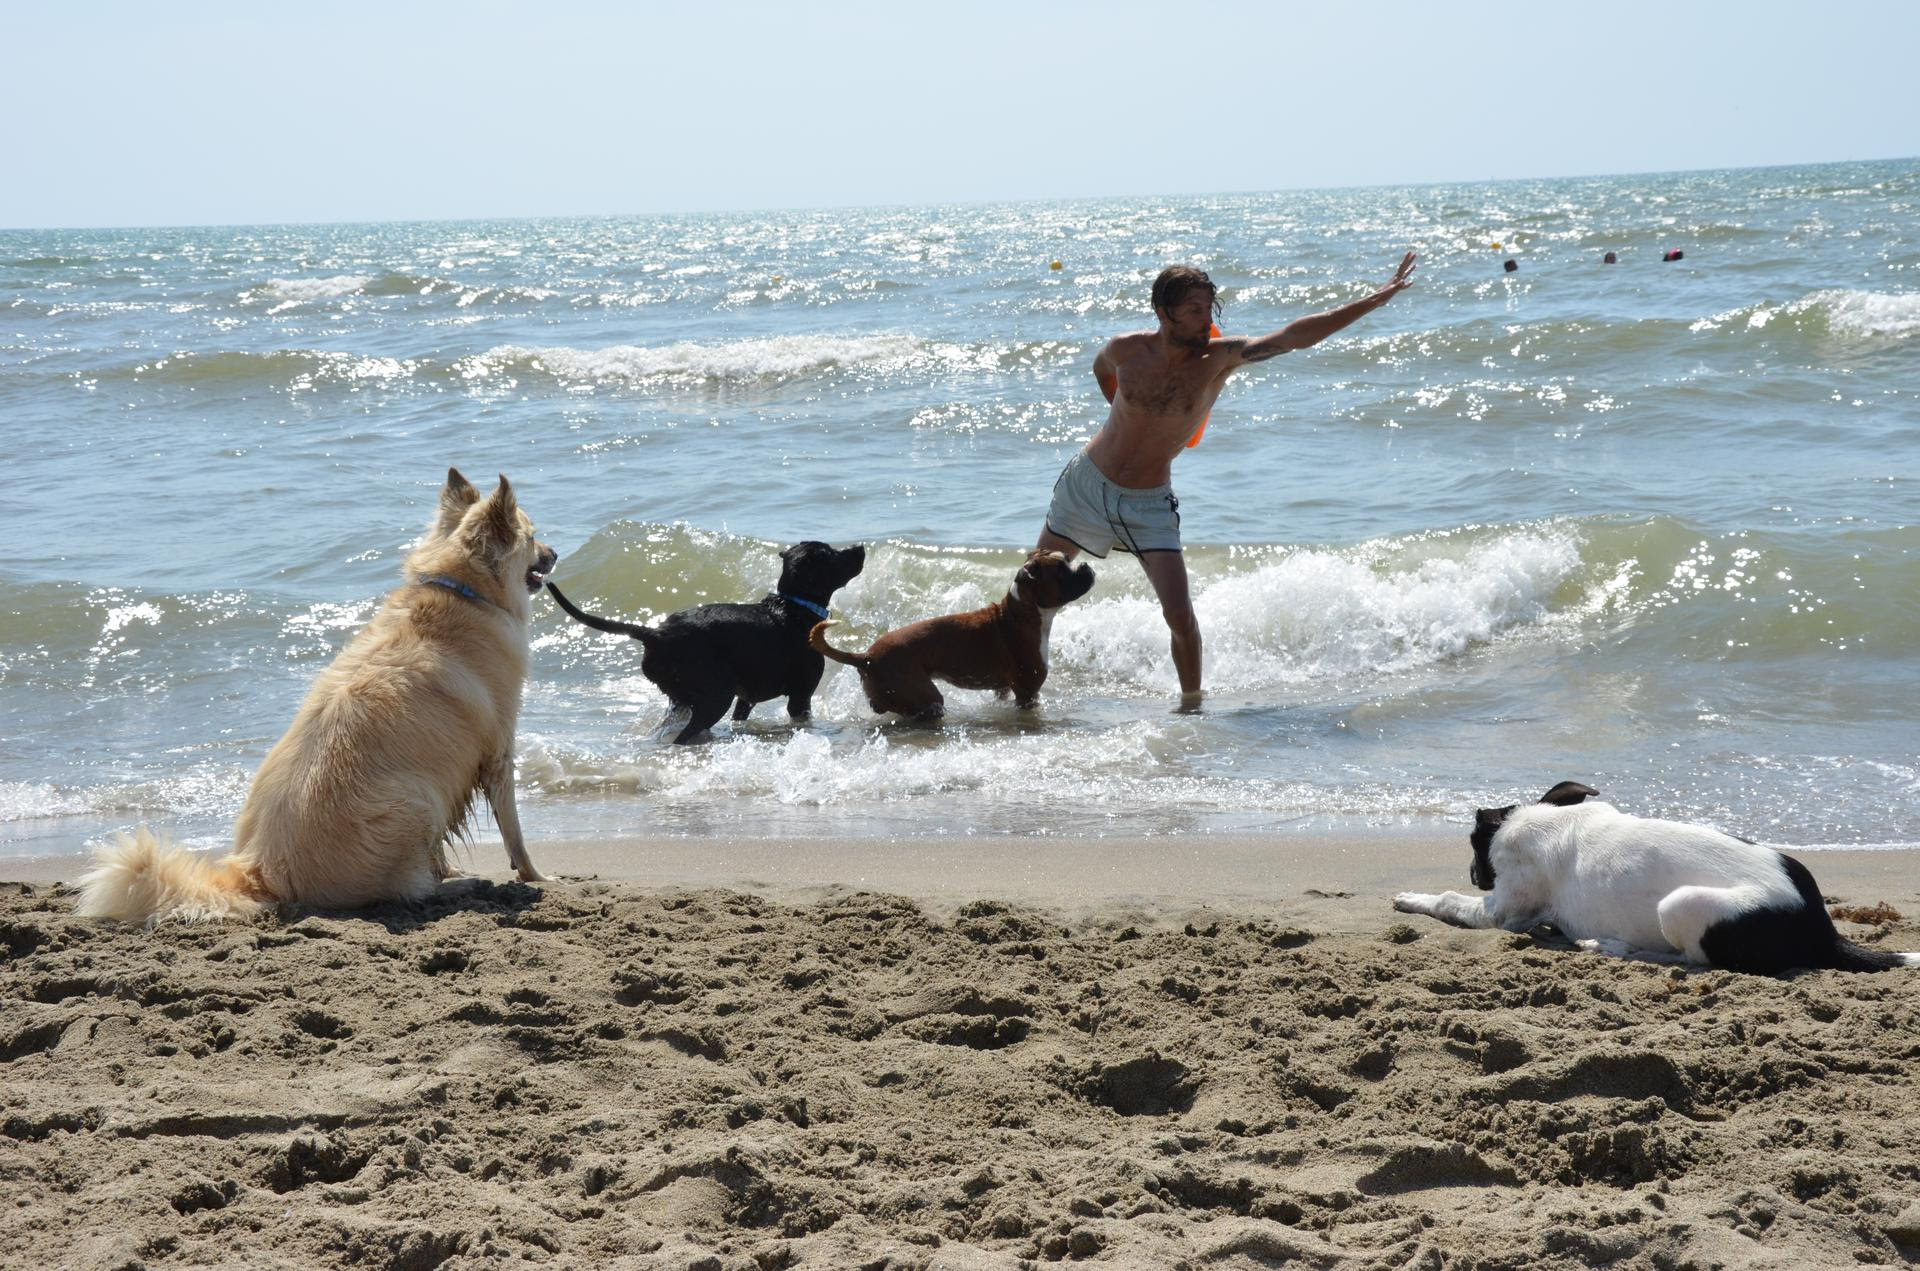 cani baubeach - dei cani giocani sulla riva del mare con un ragzzo chelnasconde dietro la schiena un oggetto arancione